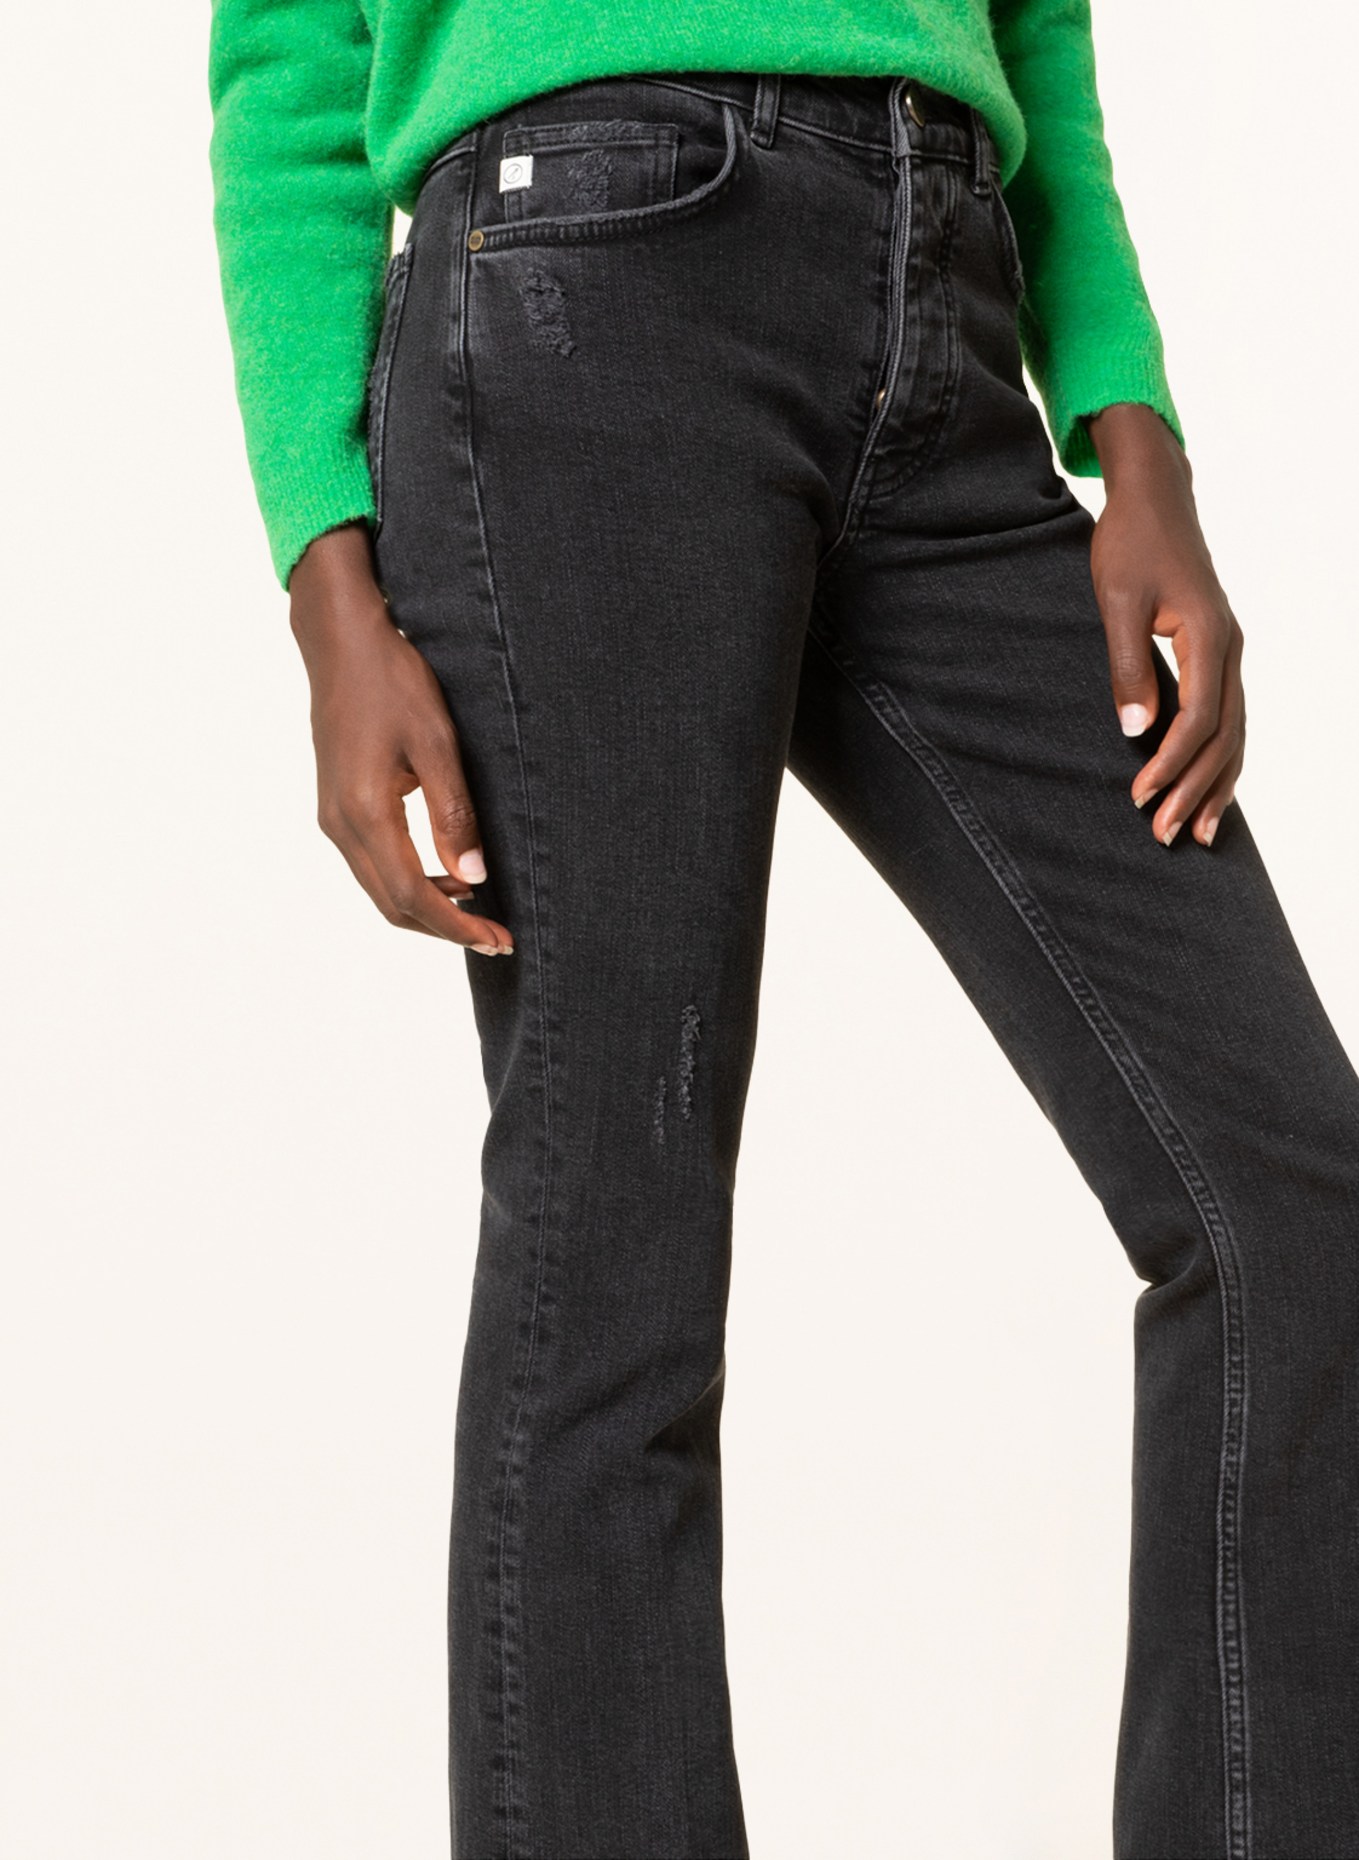 GOLDGARN DENIM Flared jeans LINDENHOF, Color: 1110  vintage black (Image 5)